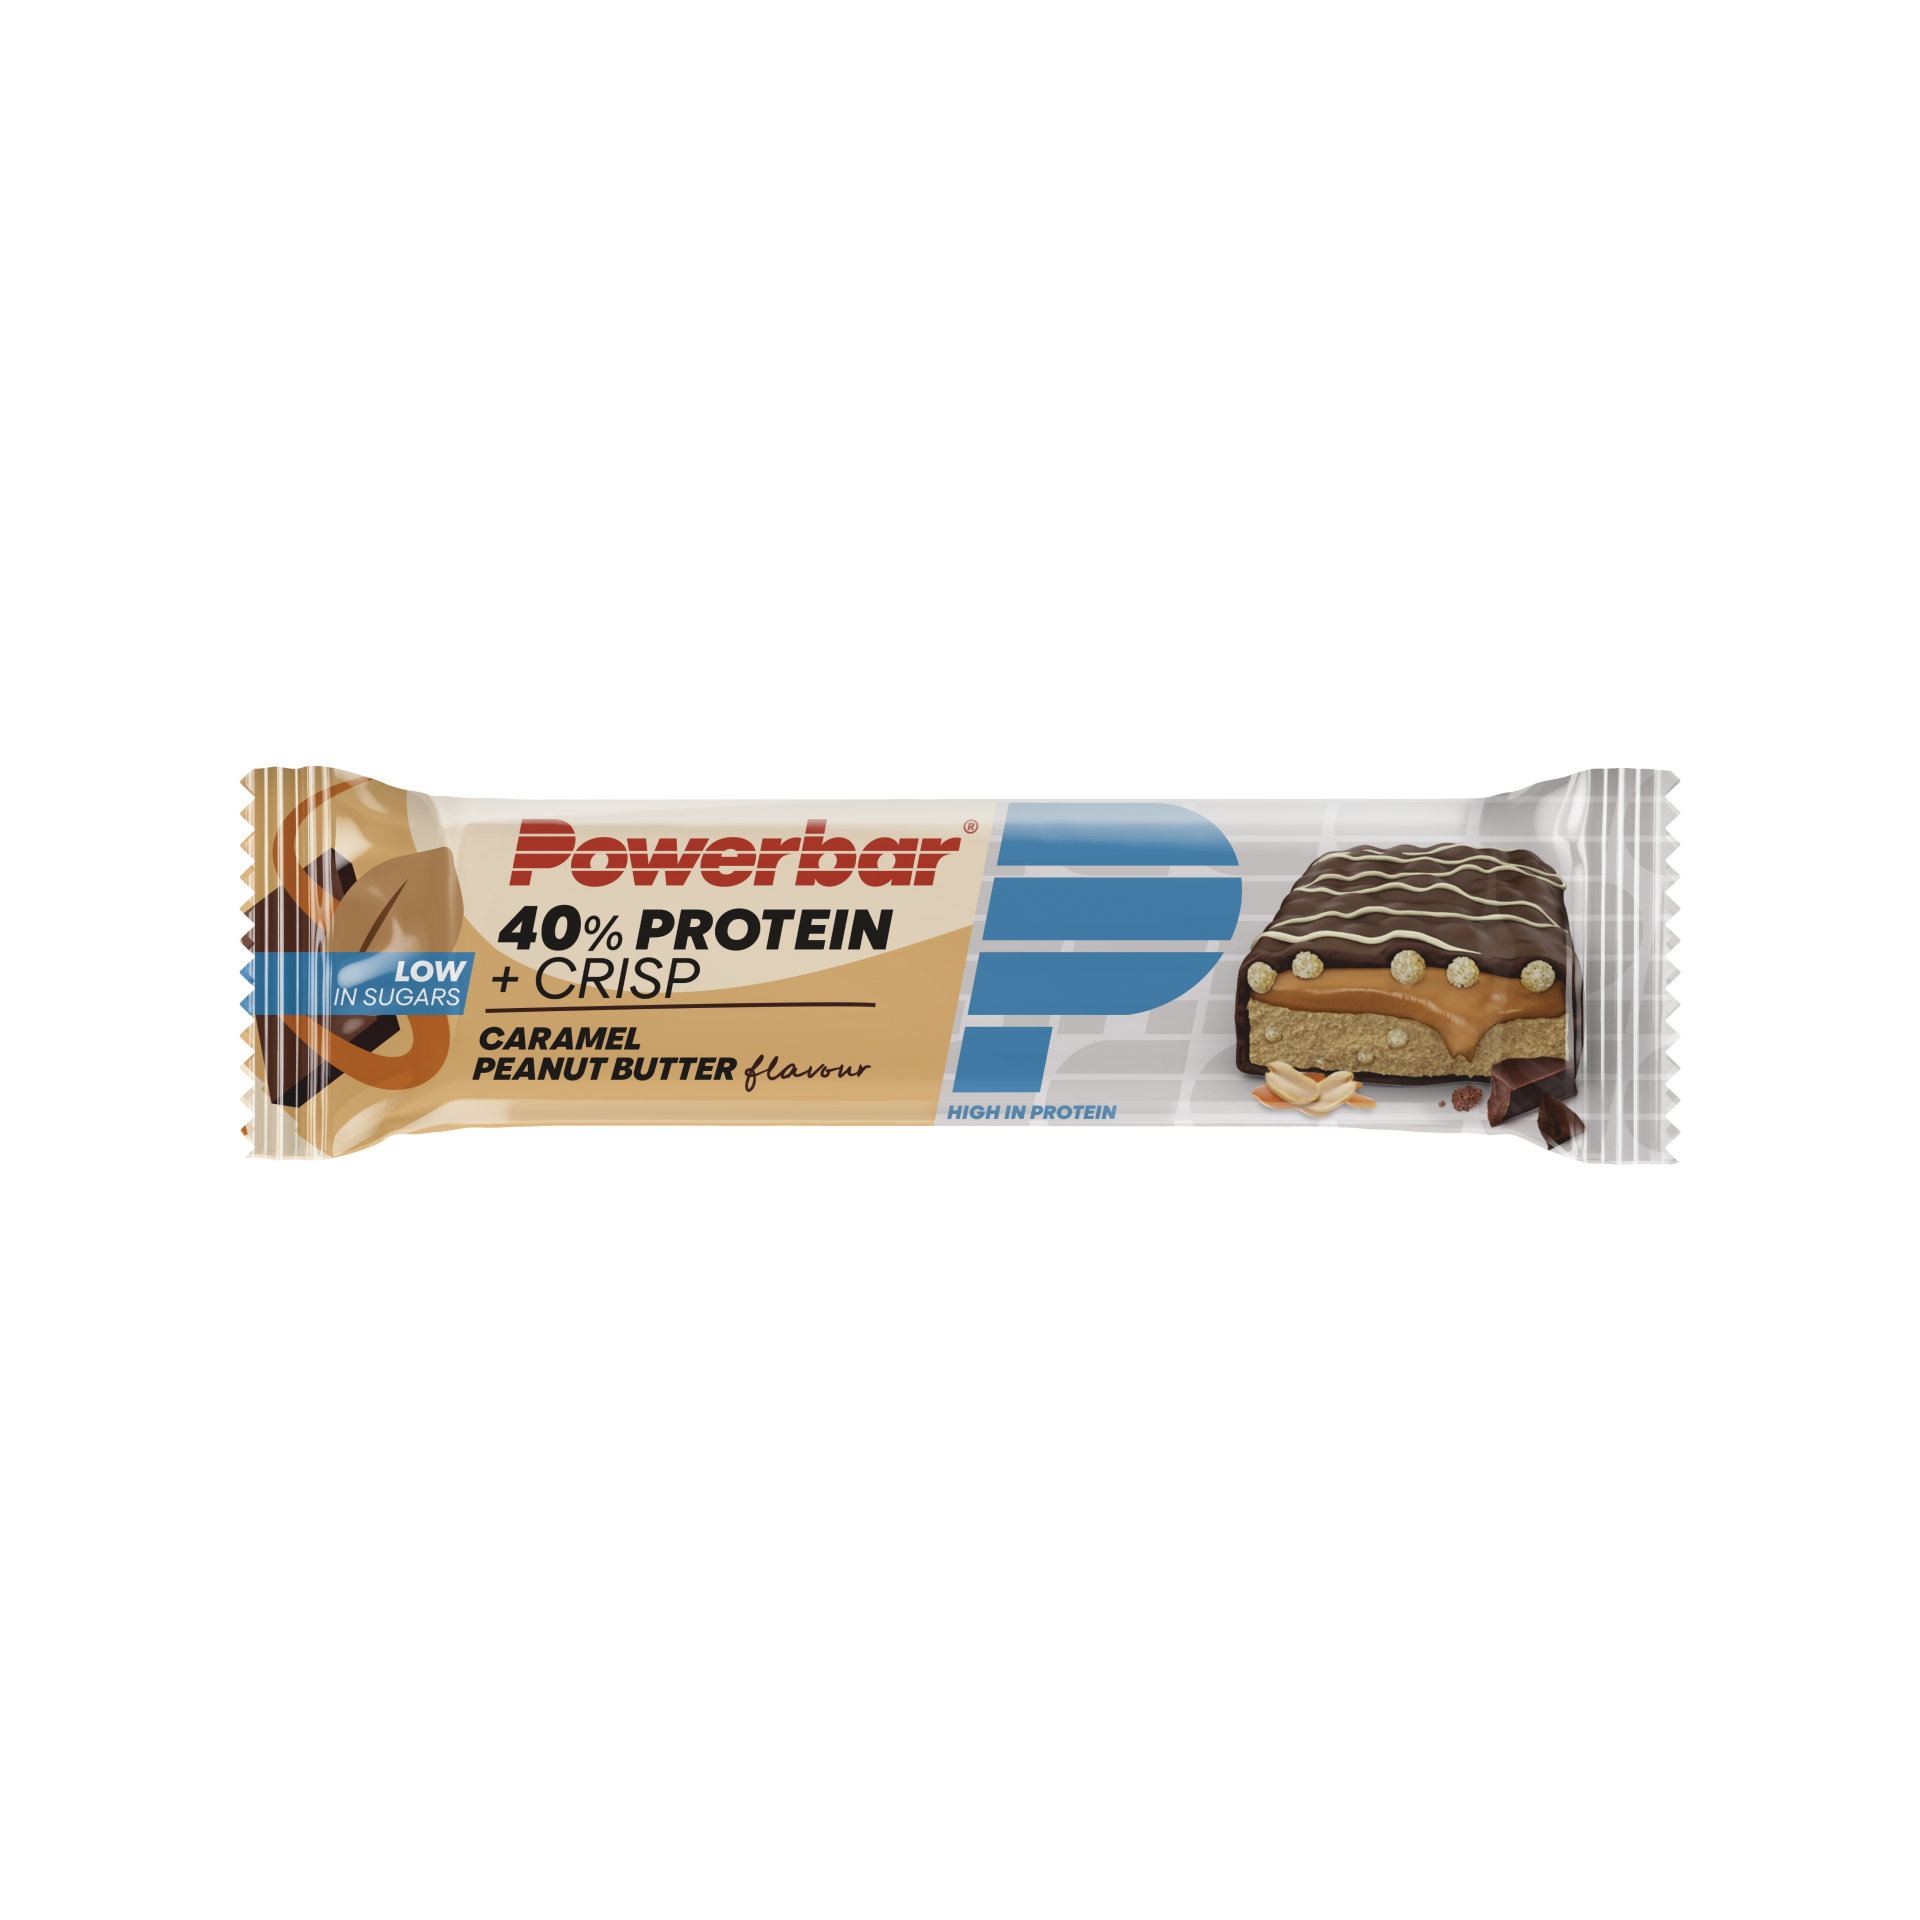 Powerbar 40 % Protein Crisp Riegel, Caramel Peanutbutter, 40 g